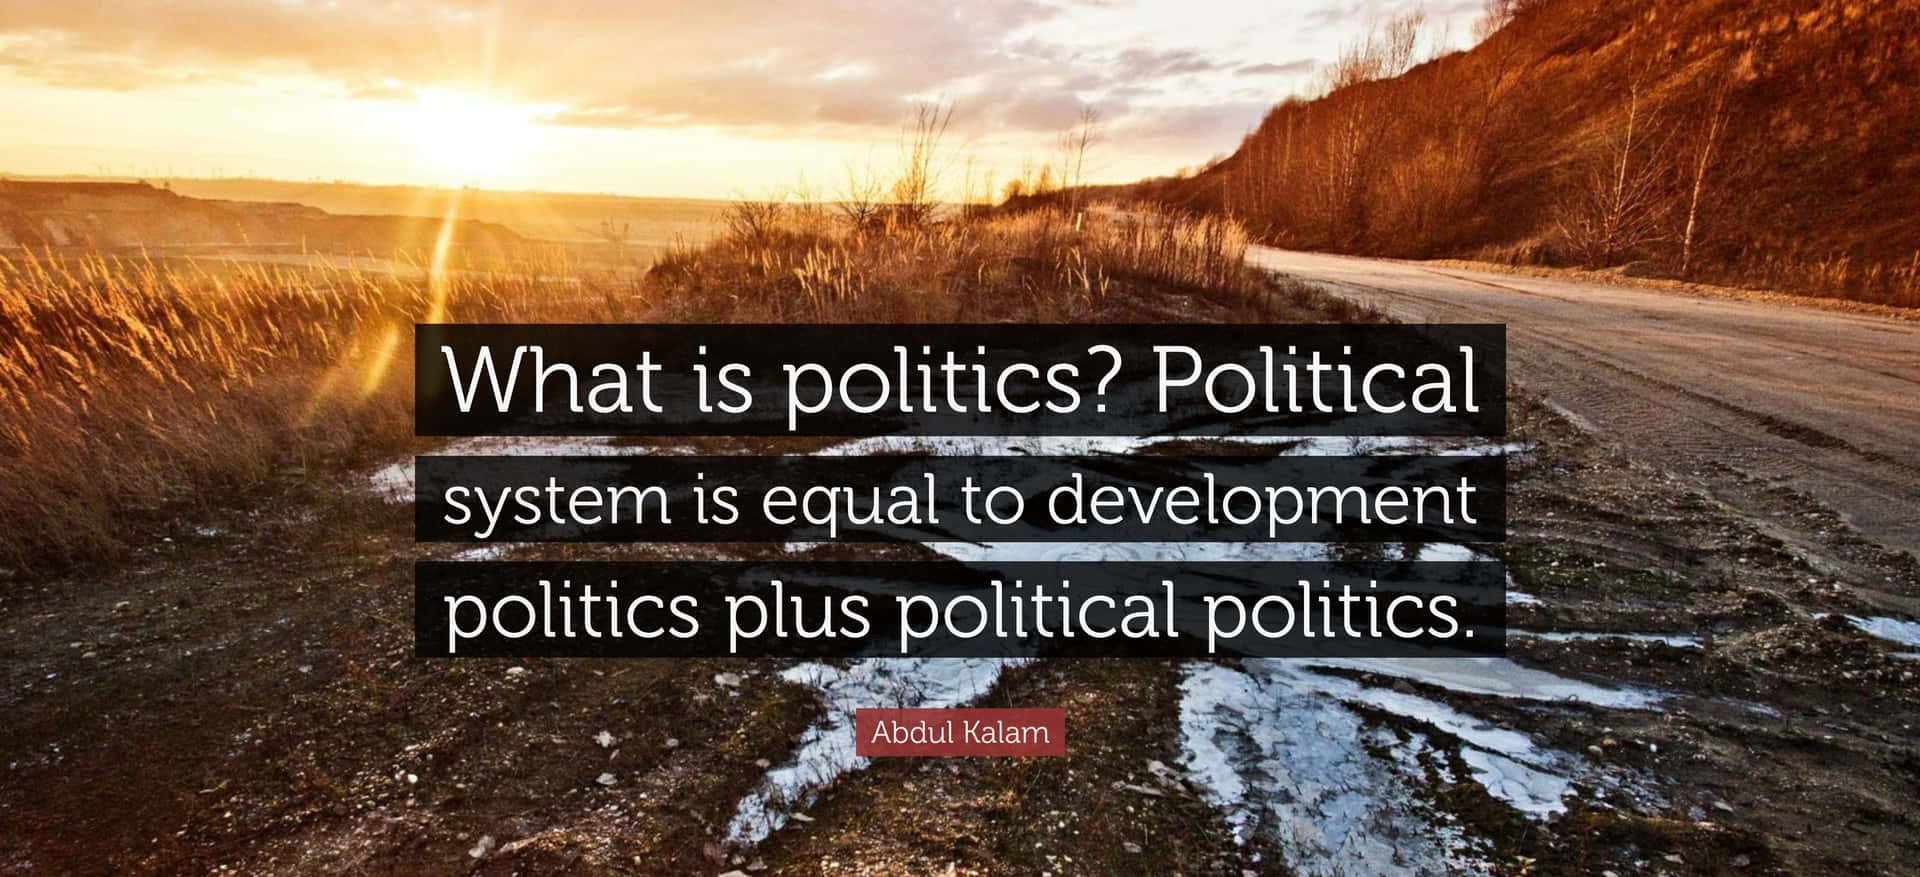 Oque É Política Política?